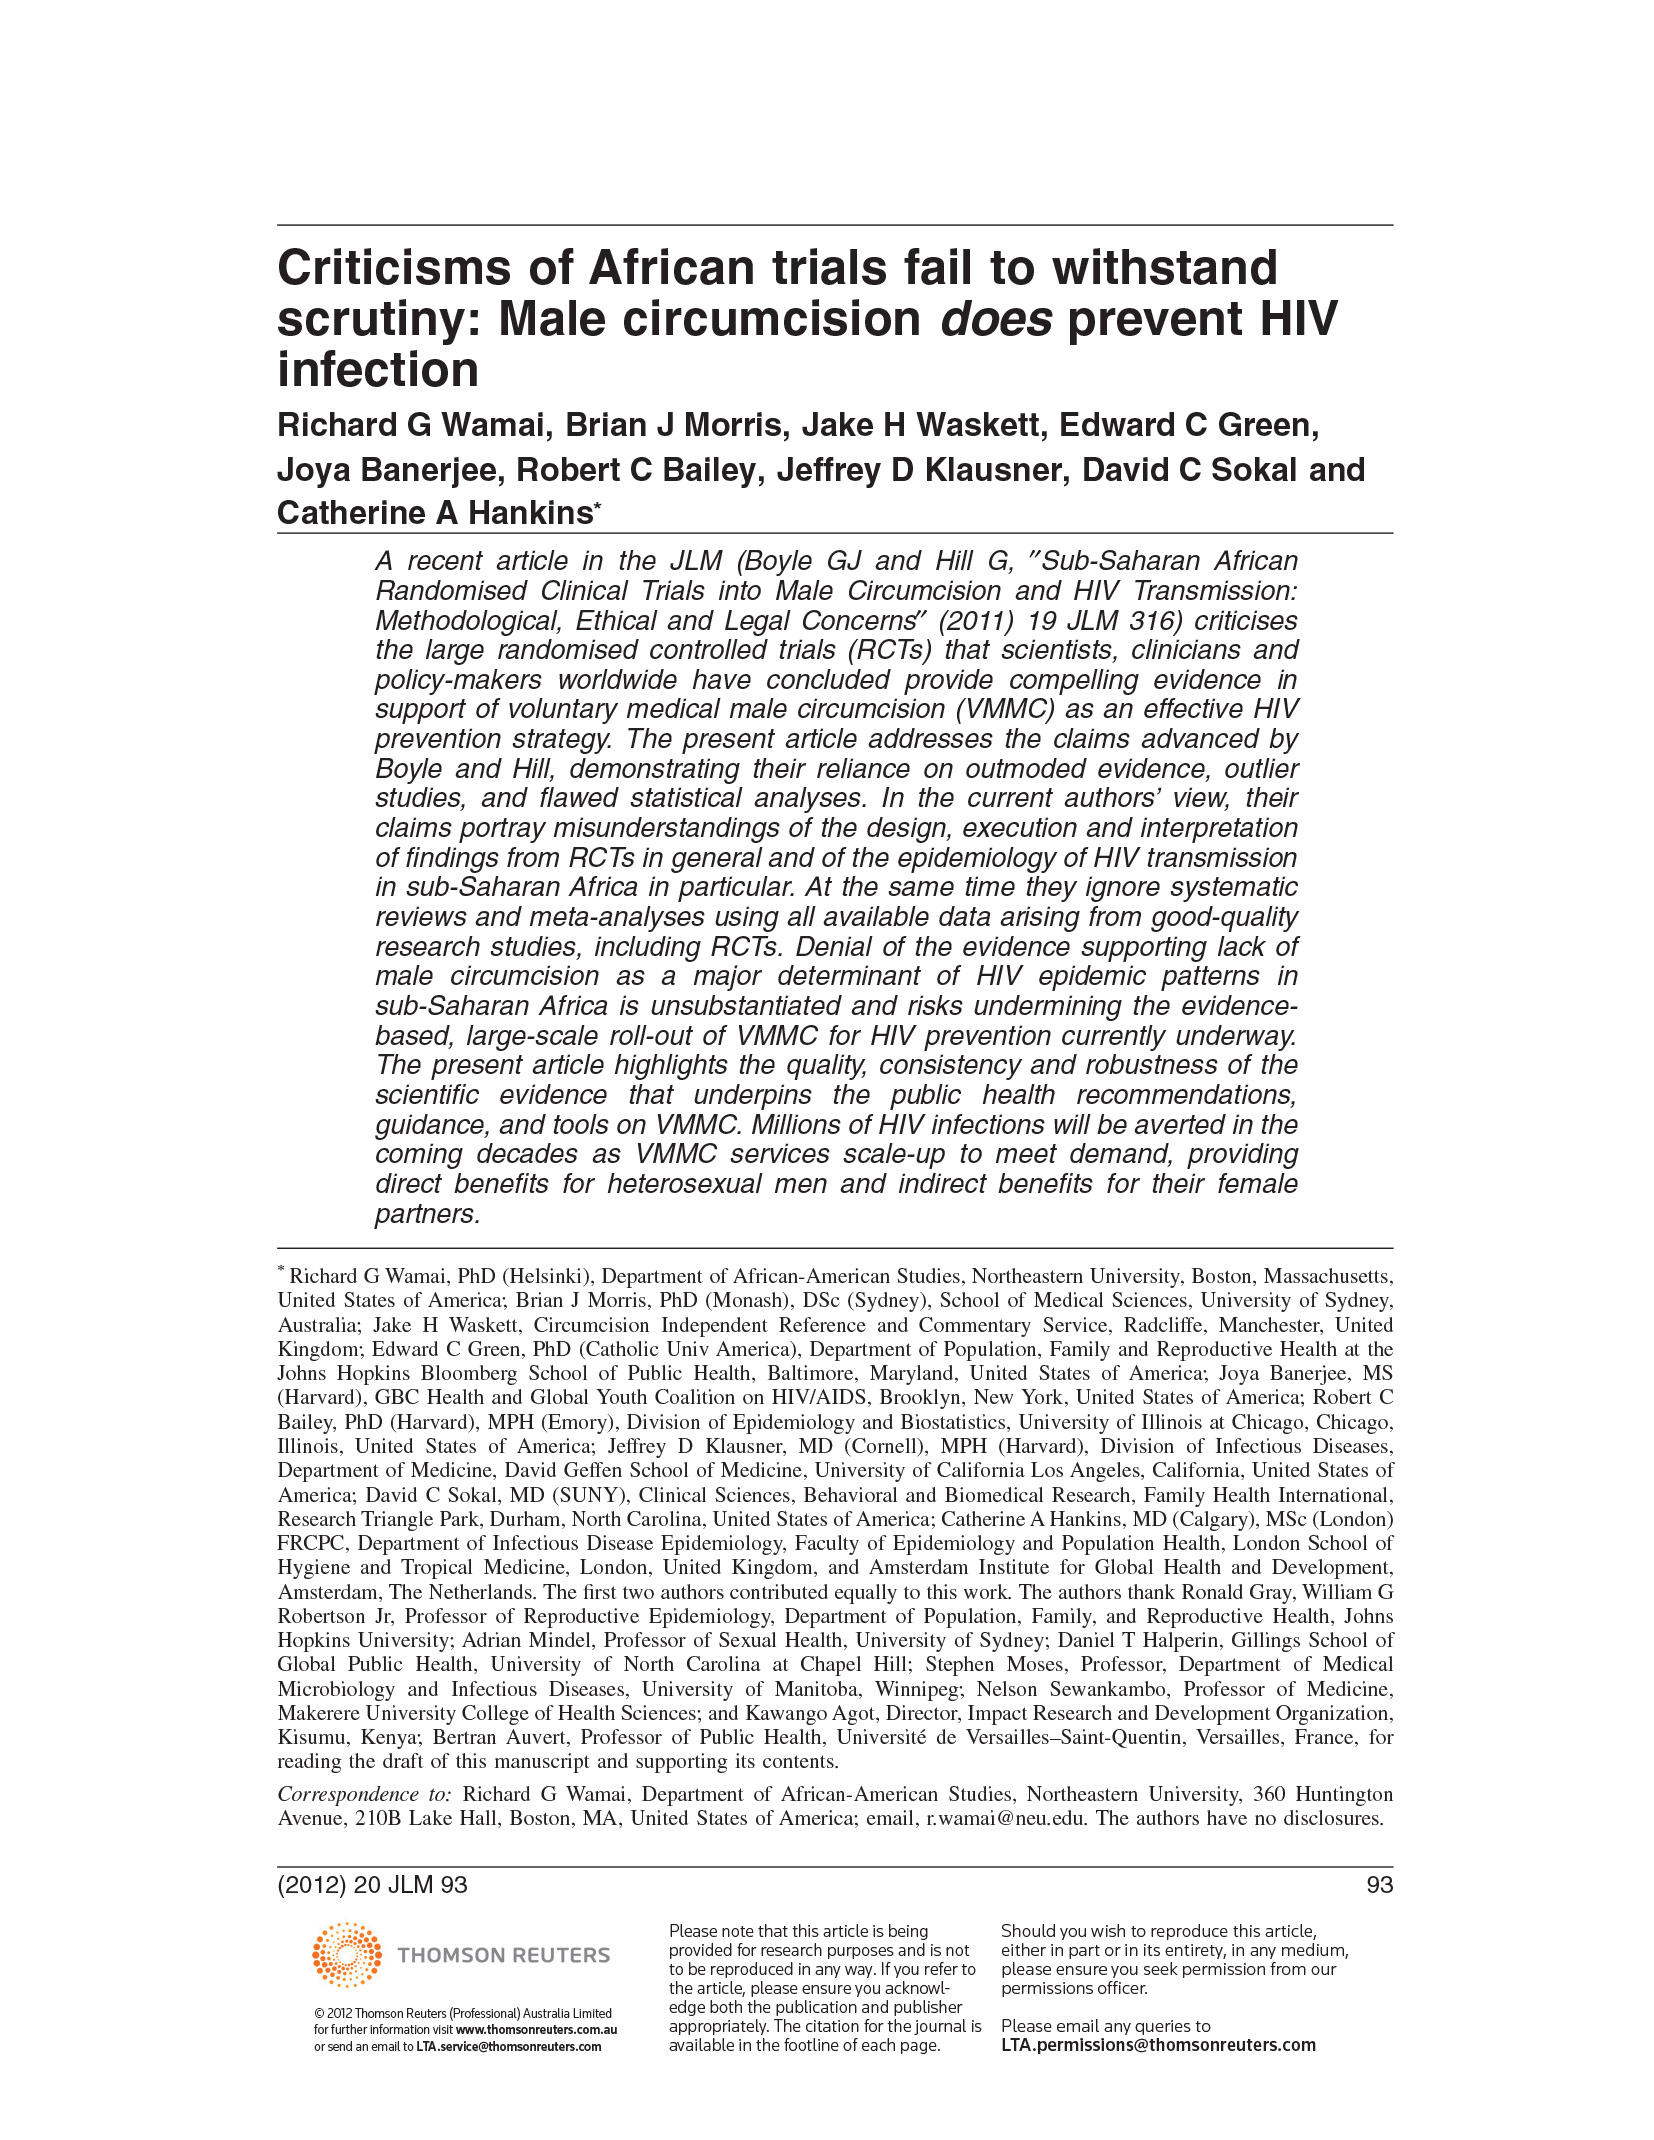 Les critiques des essais africains ne résistent pas à l'examen : La circoncision masculine prévient effectivement l'infection par le VIH - couverture